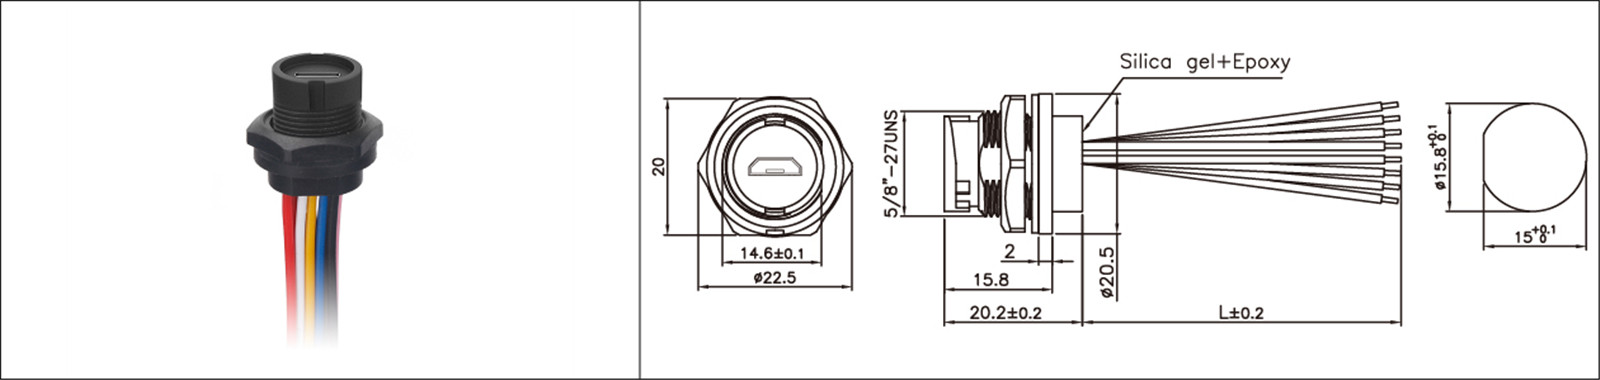 Micro USB tipo de montagem em painel 2.0 3.0 fêmea e macho à prova d'água IP67 cabo de extensão overmold conector industrial-02 (1)